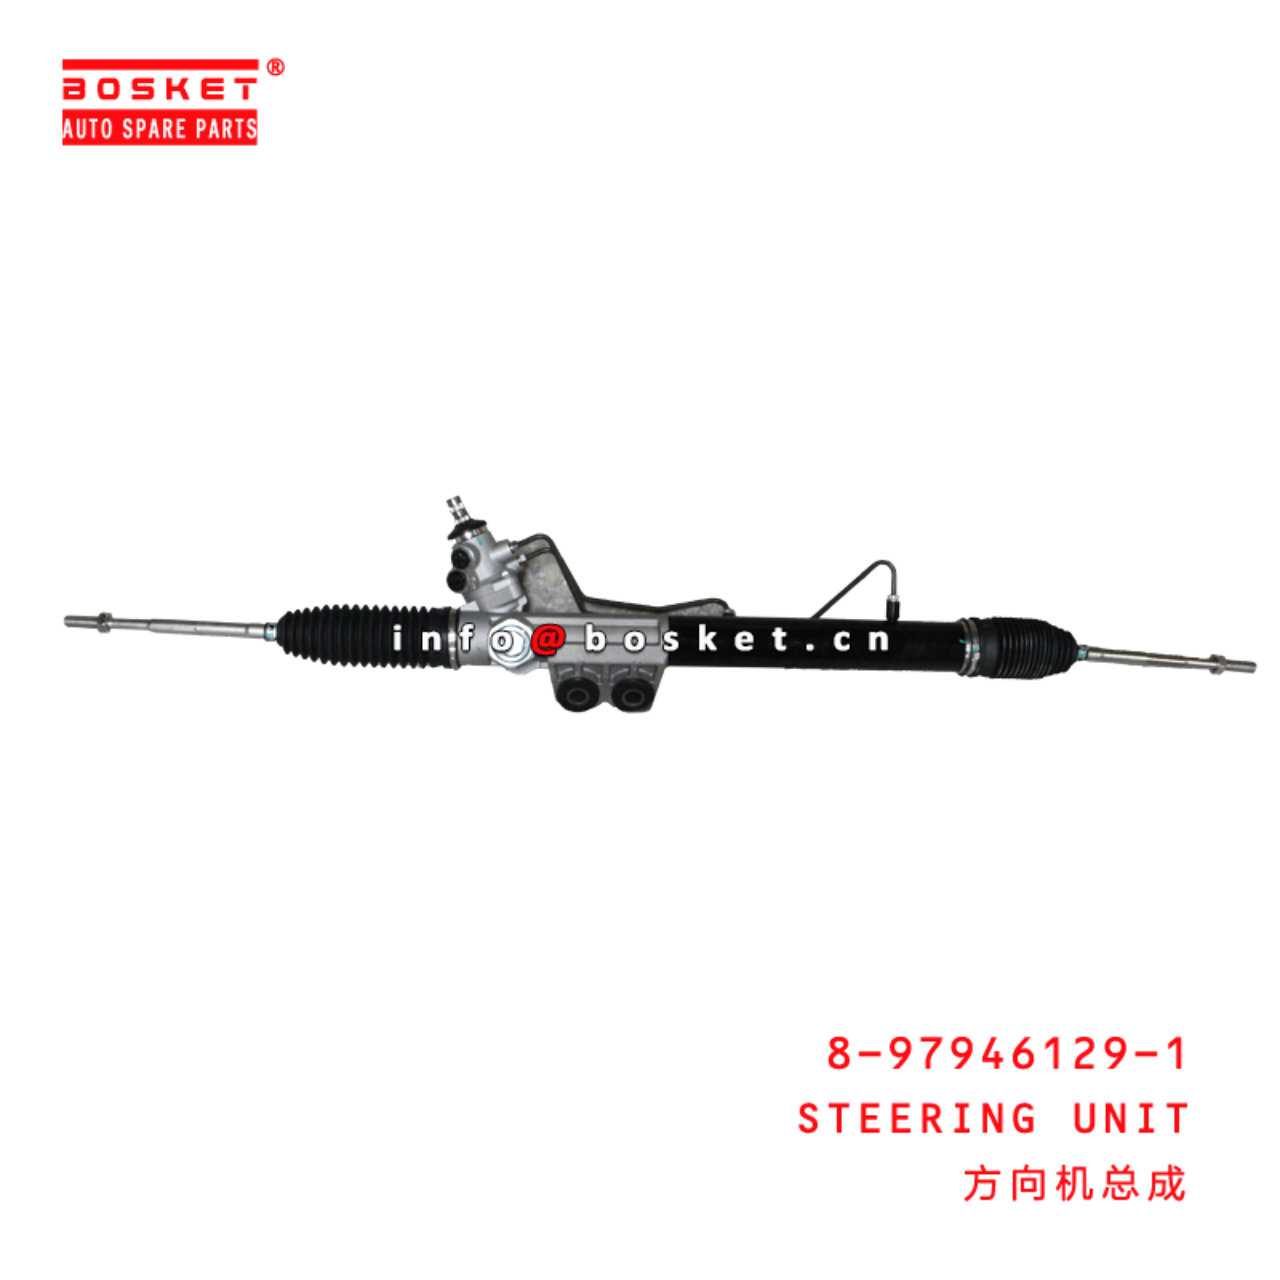 8-97946129-1 Steering Unit 8979461291 Suitable for ISUZU D-MAX 2012-2020